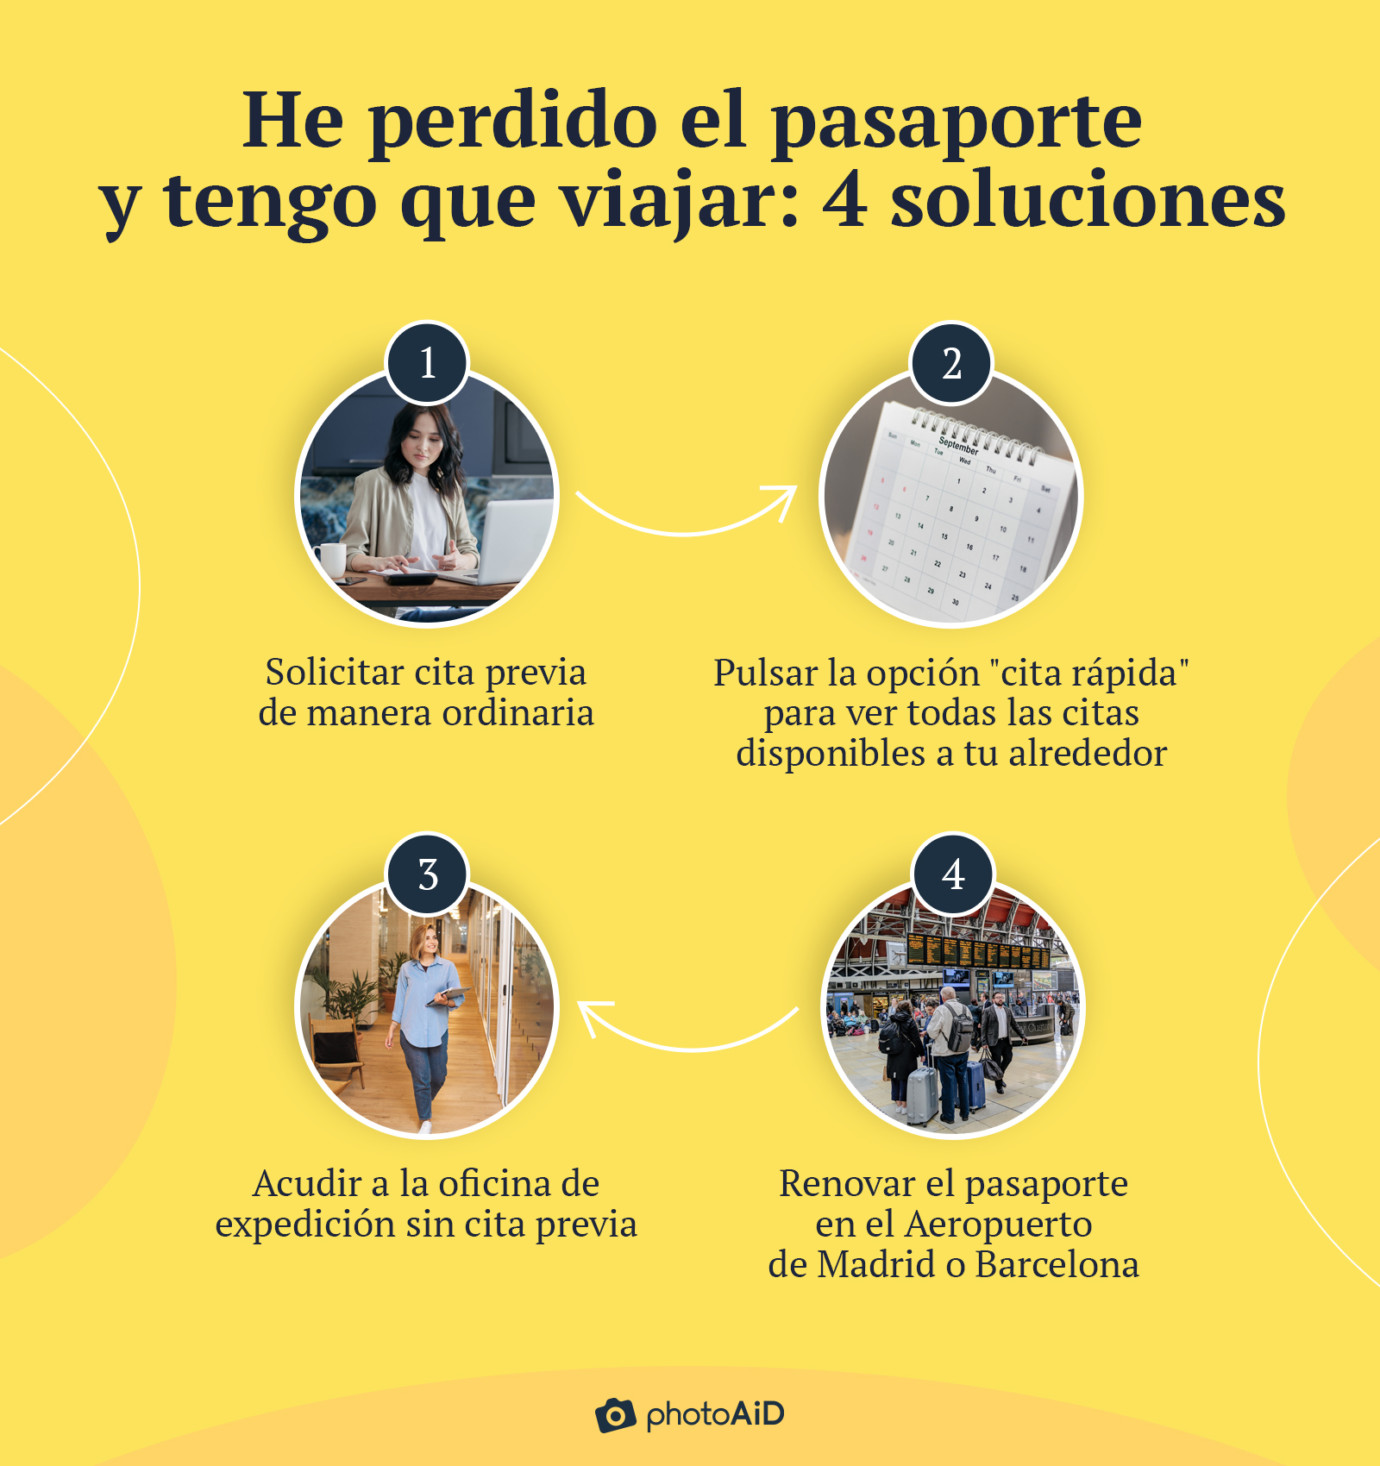 una gráfica color amarillo indica las 4 soluciones para renovar un pasaporte perdido.